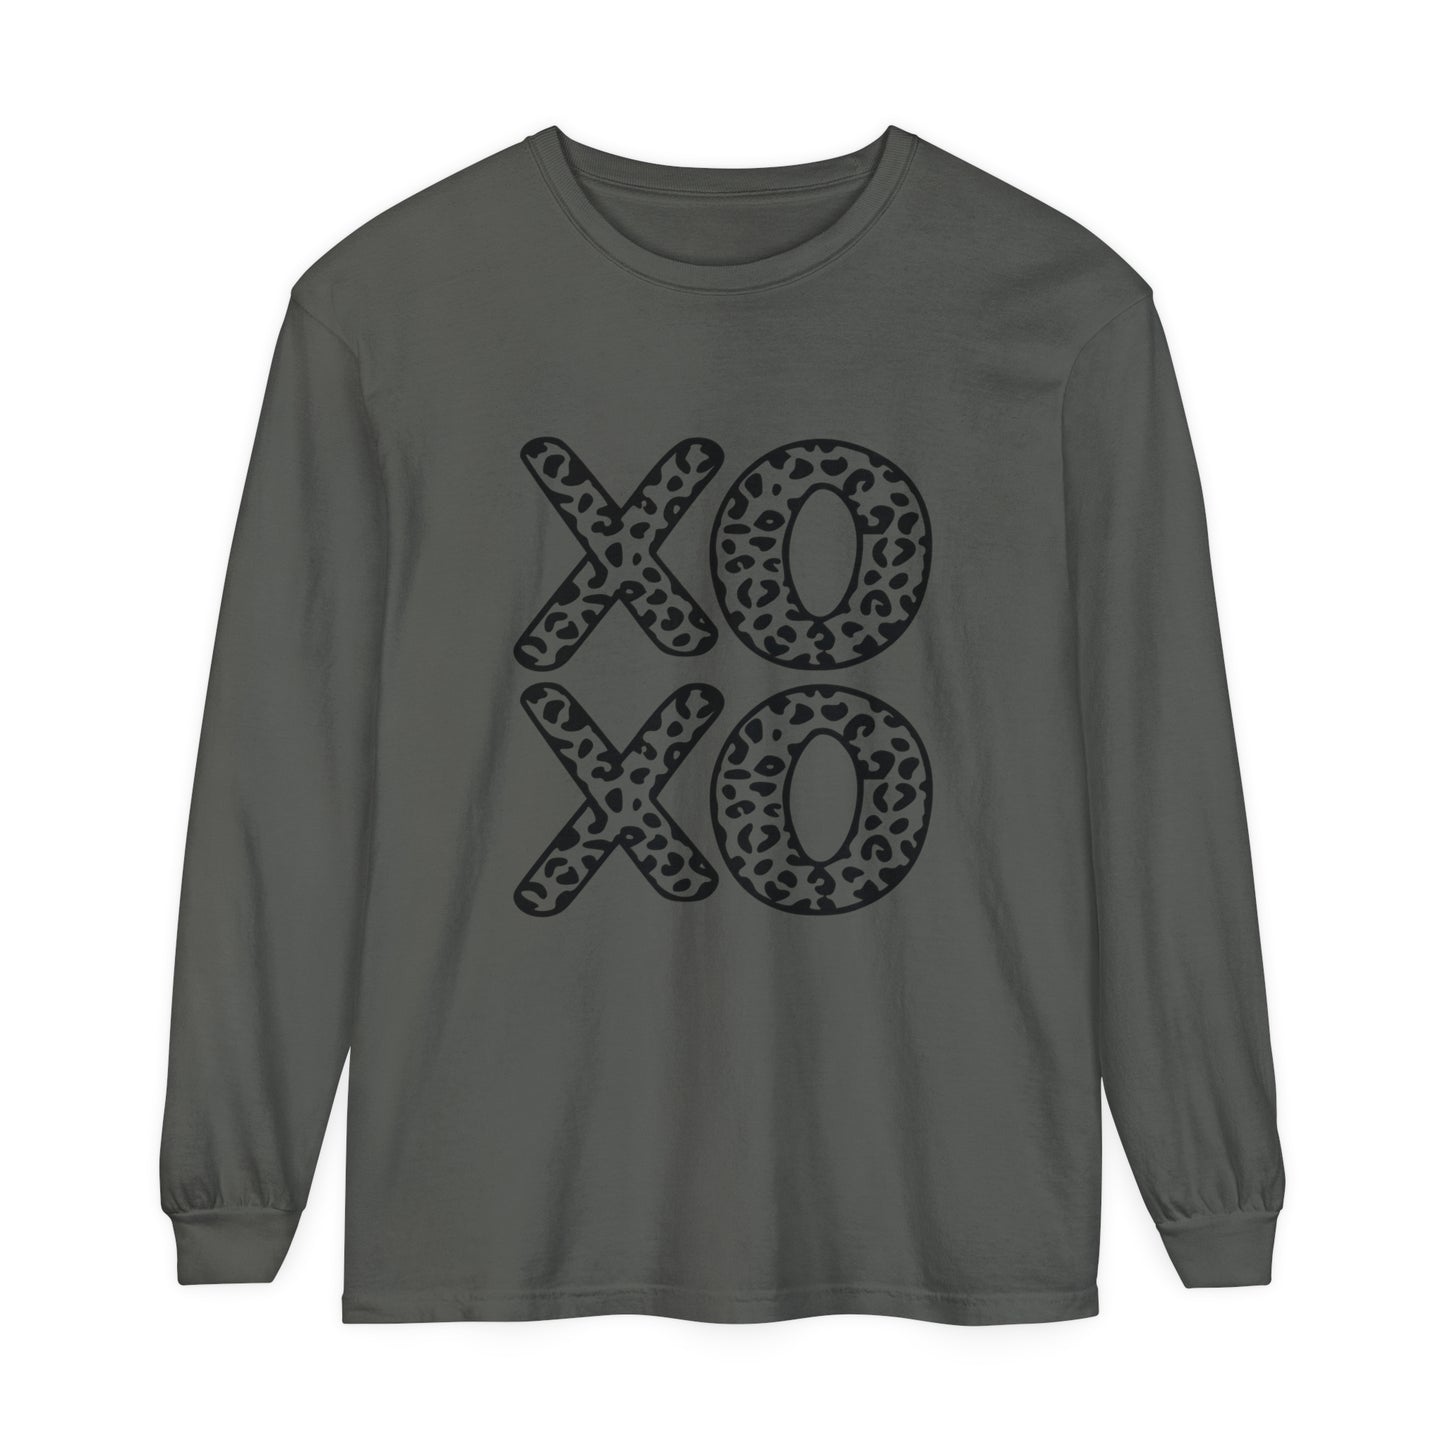 XOXO Women's Loose Long Sleeve T-Shirt